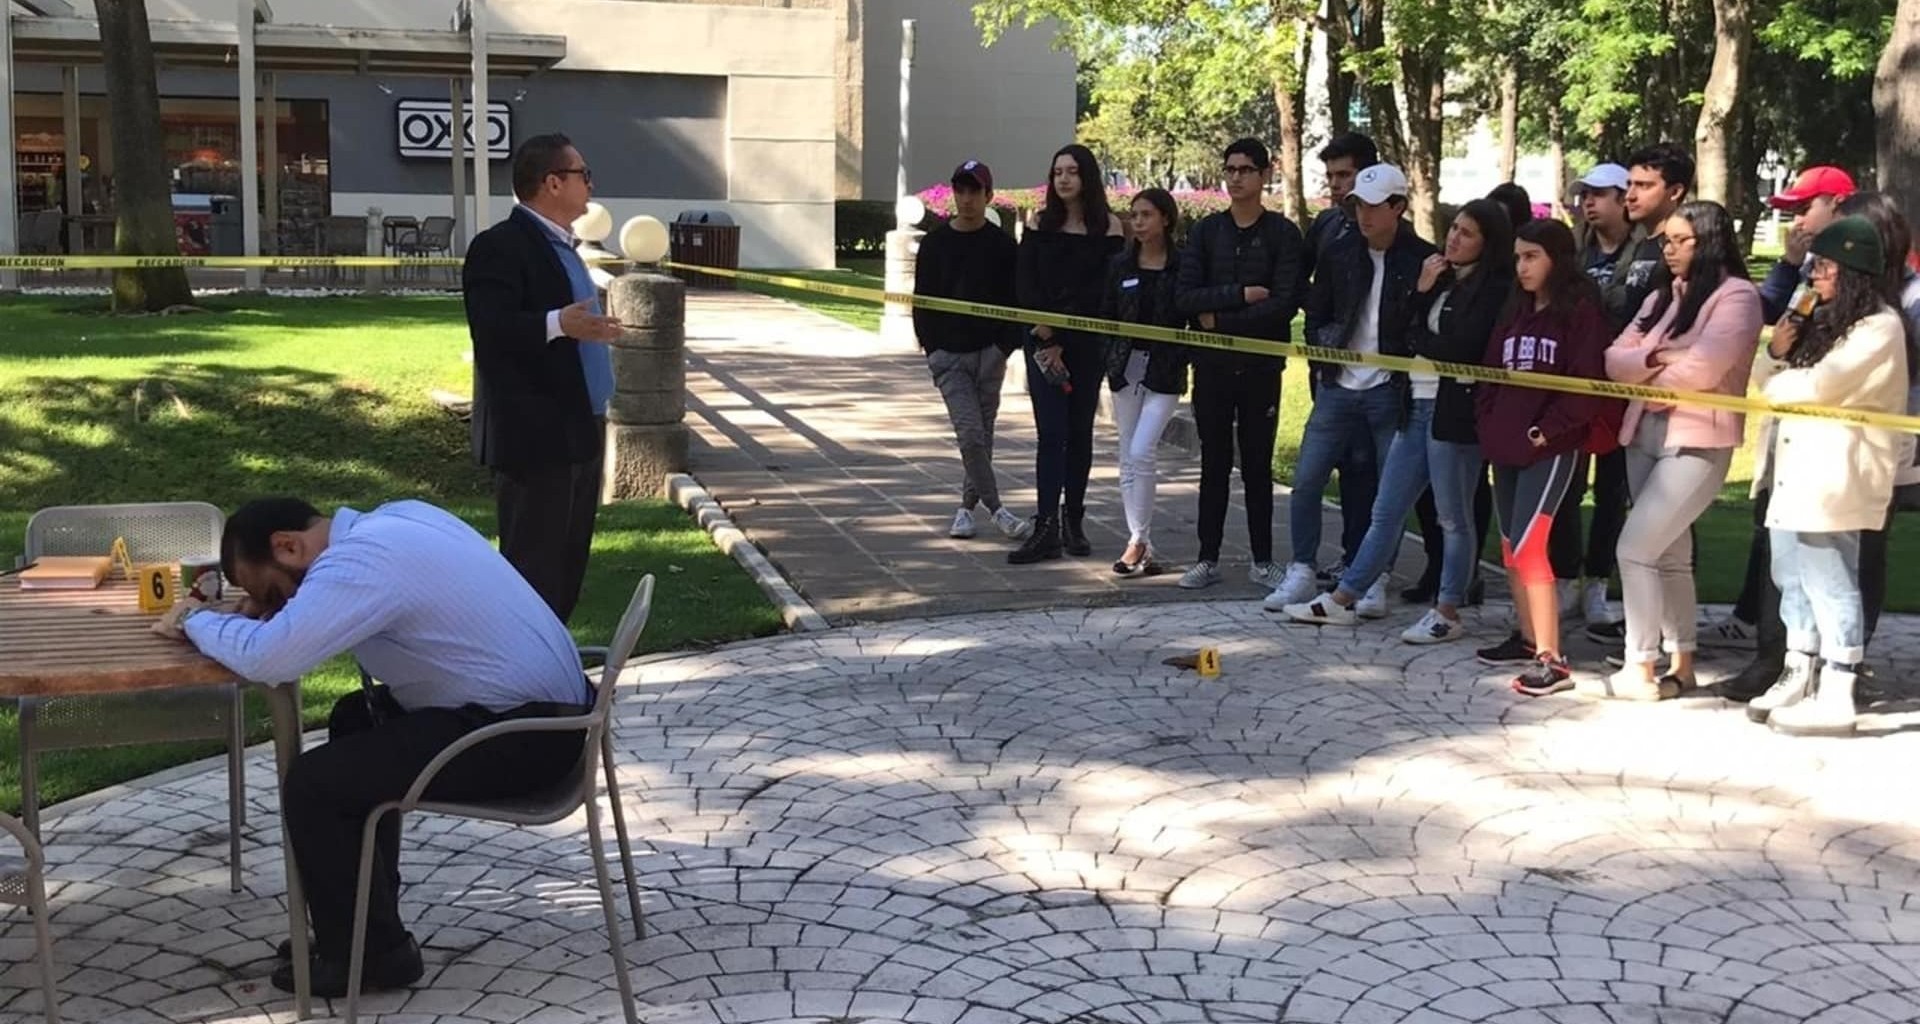 En Taller de Criminalística alumnos de PrepaTec Guadalajara aprenden sobre Juicios Orales